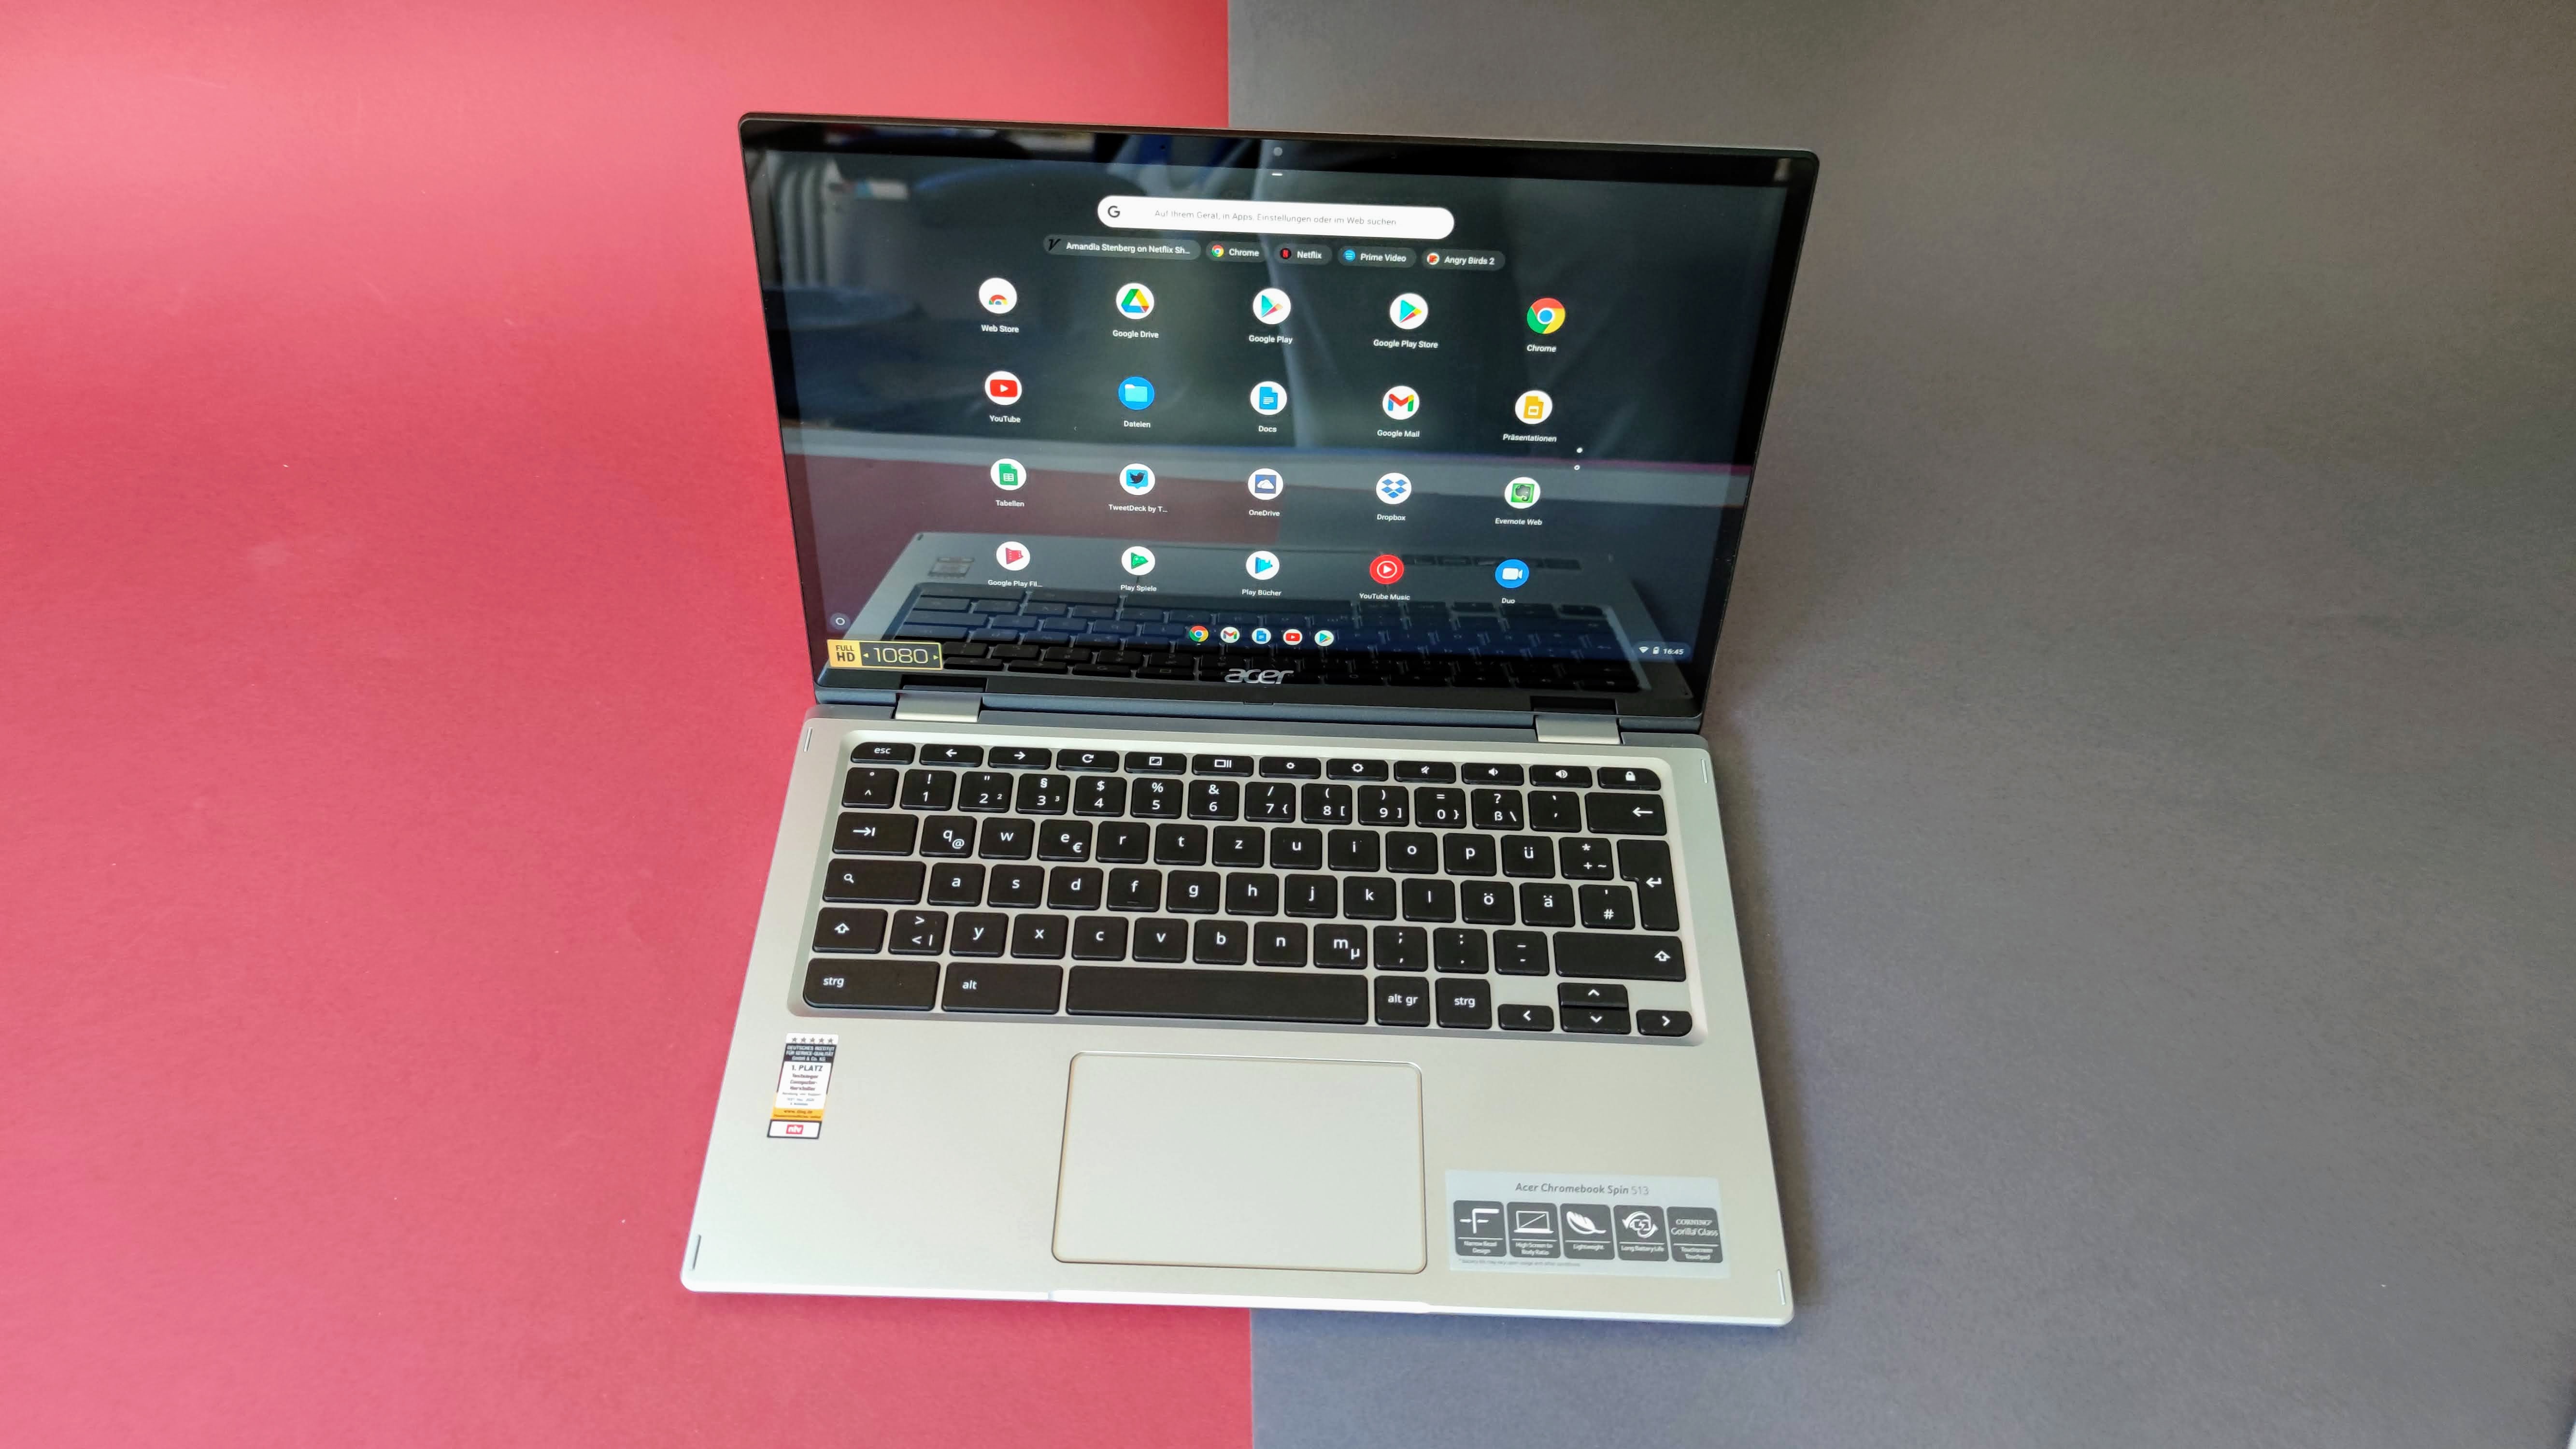 Günstige Laptops: Was sollte man bei Notebooks unter 300 Euro beachten? |  TechStage